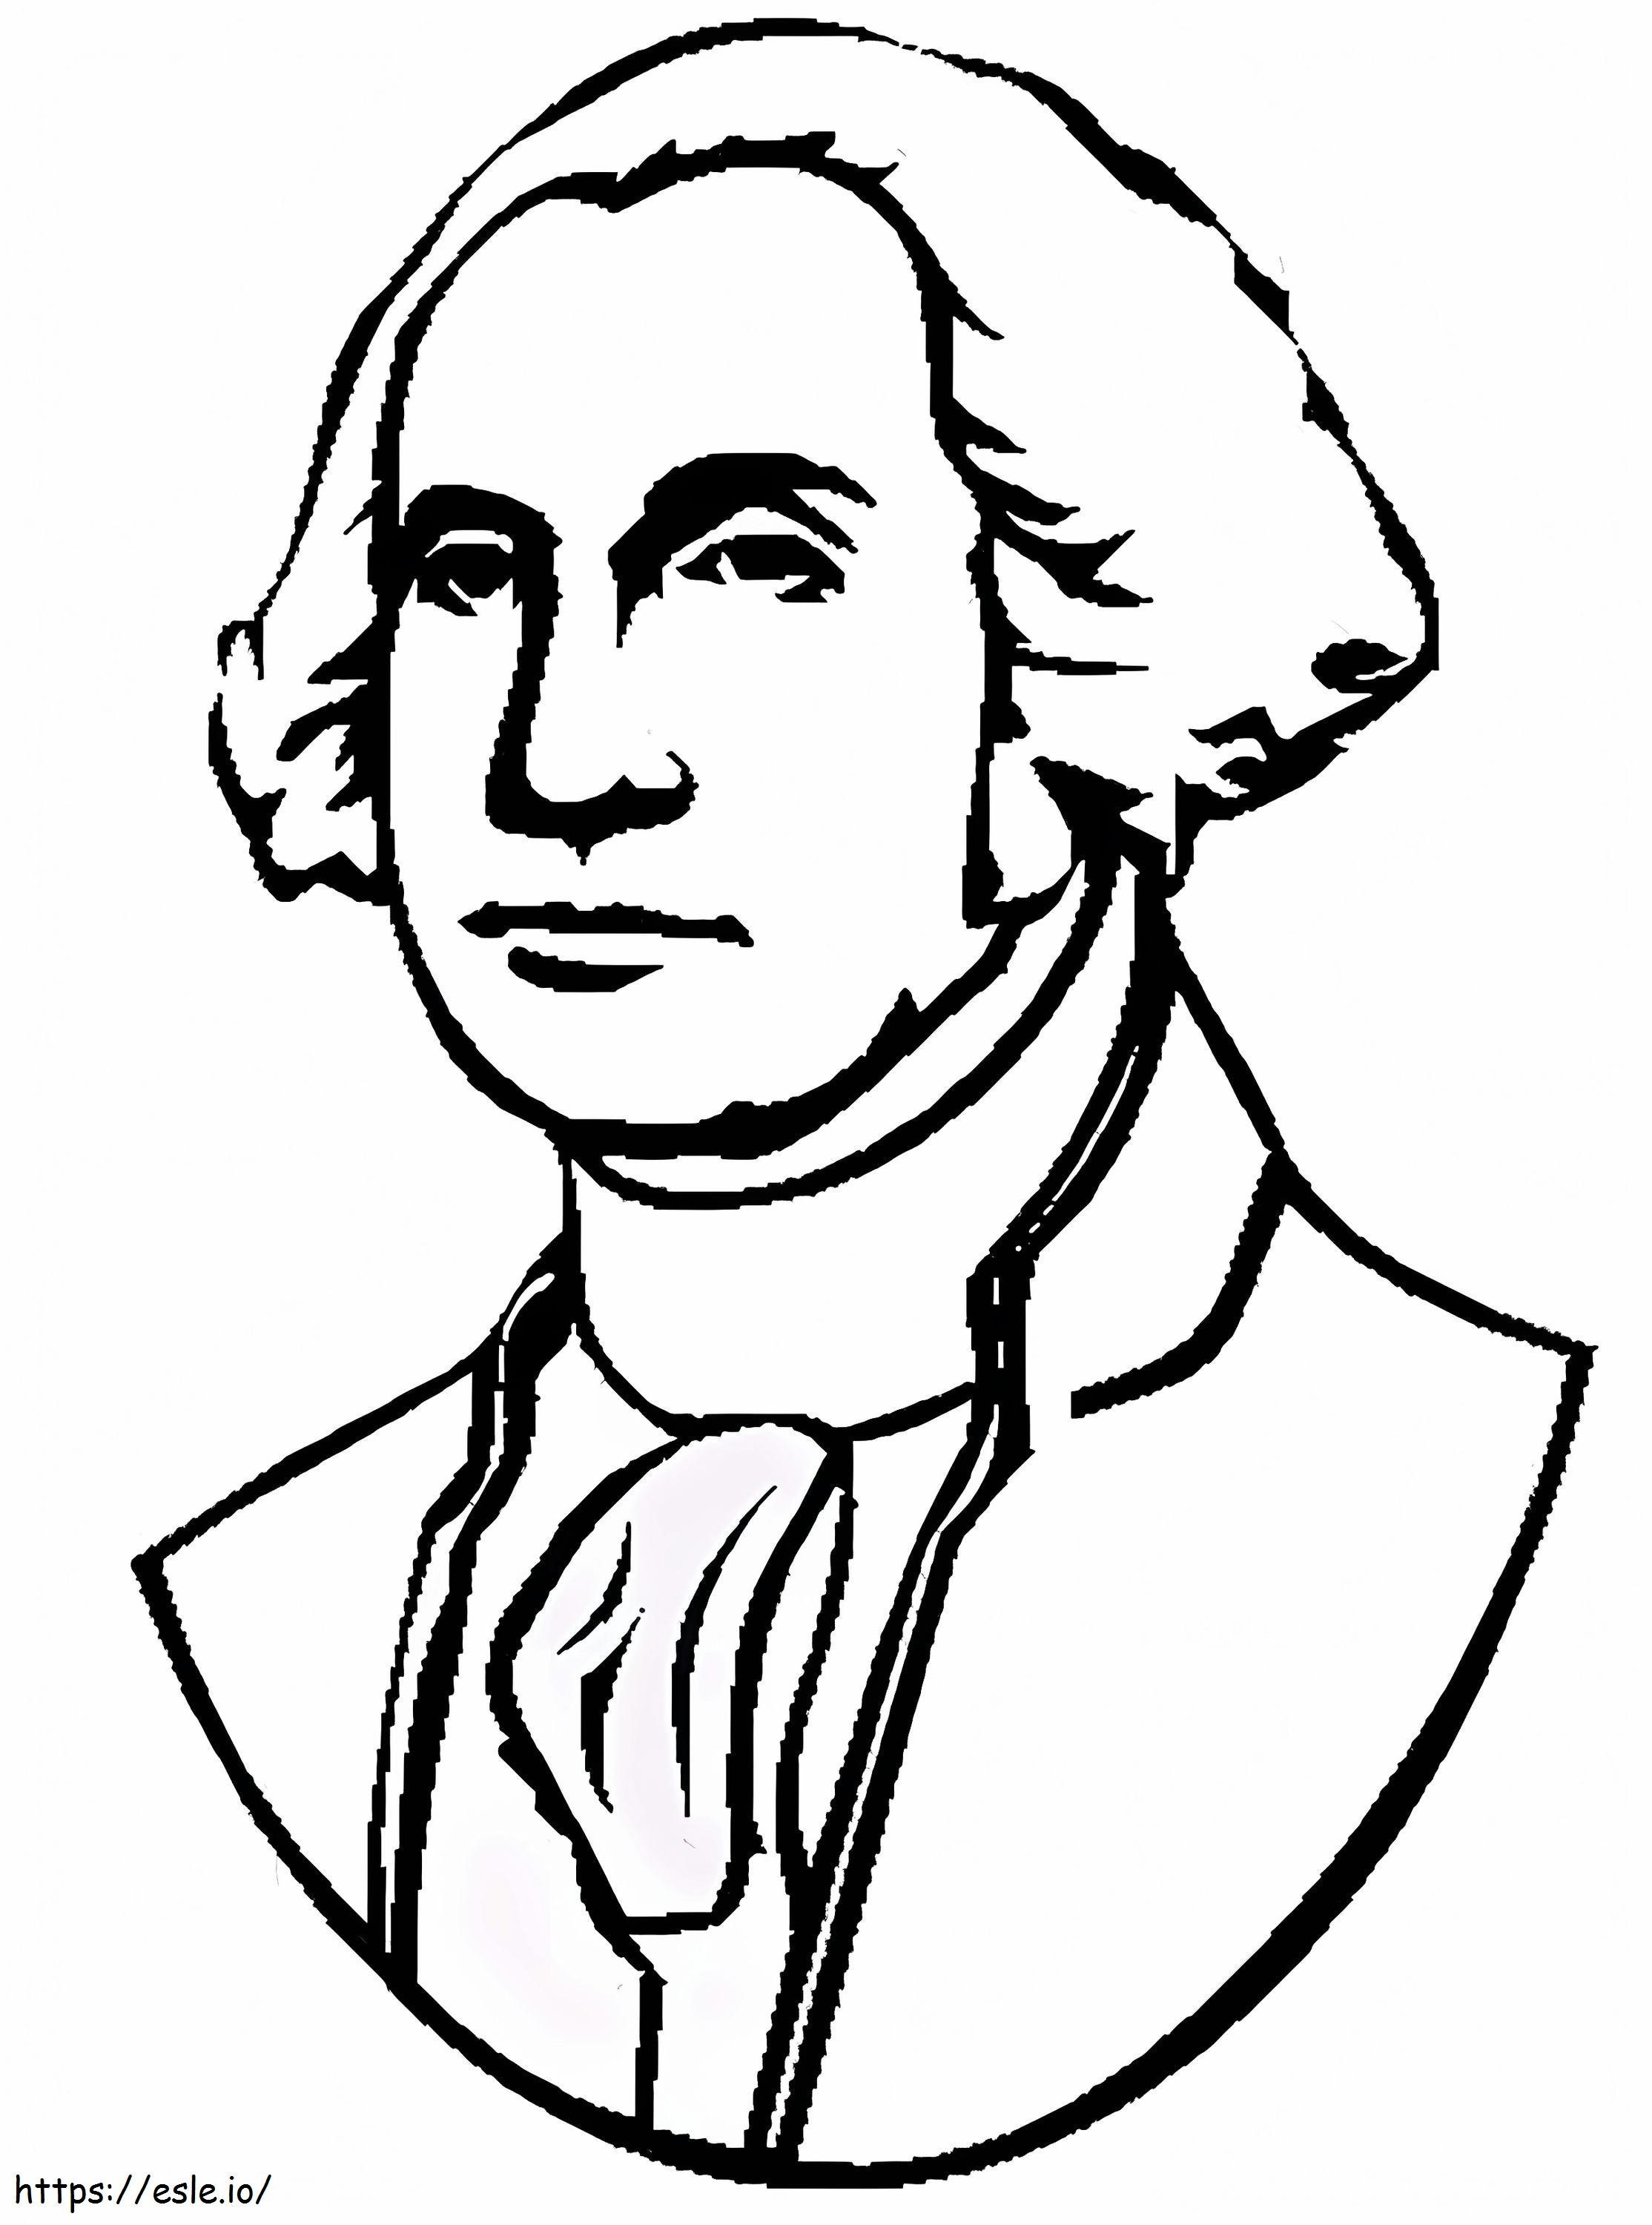 President George Washington kleurplaat kleurplaat